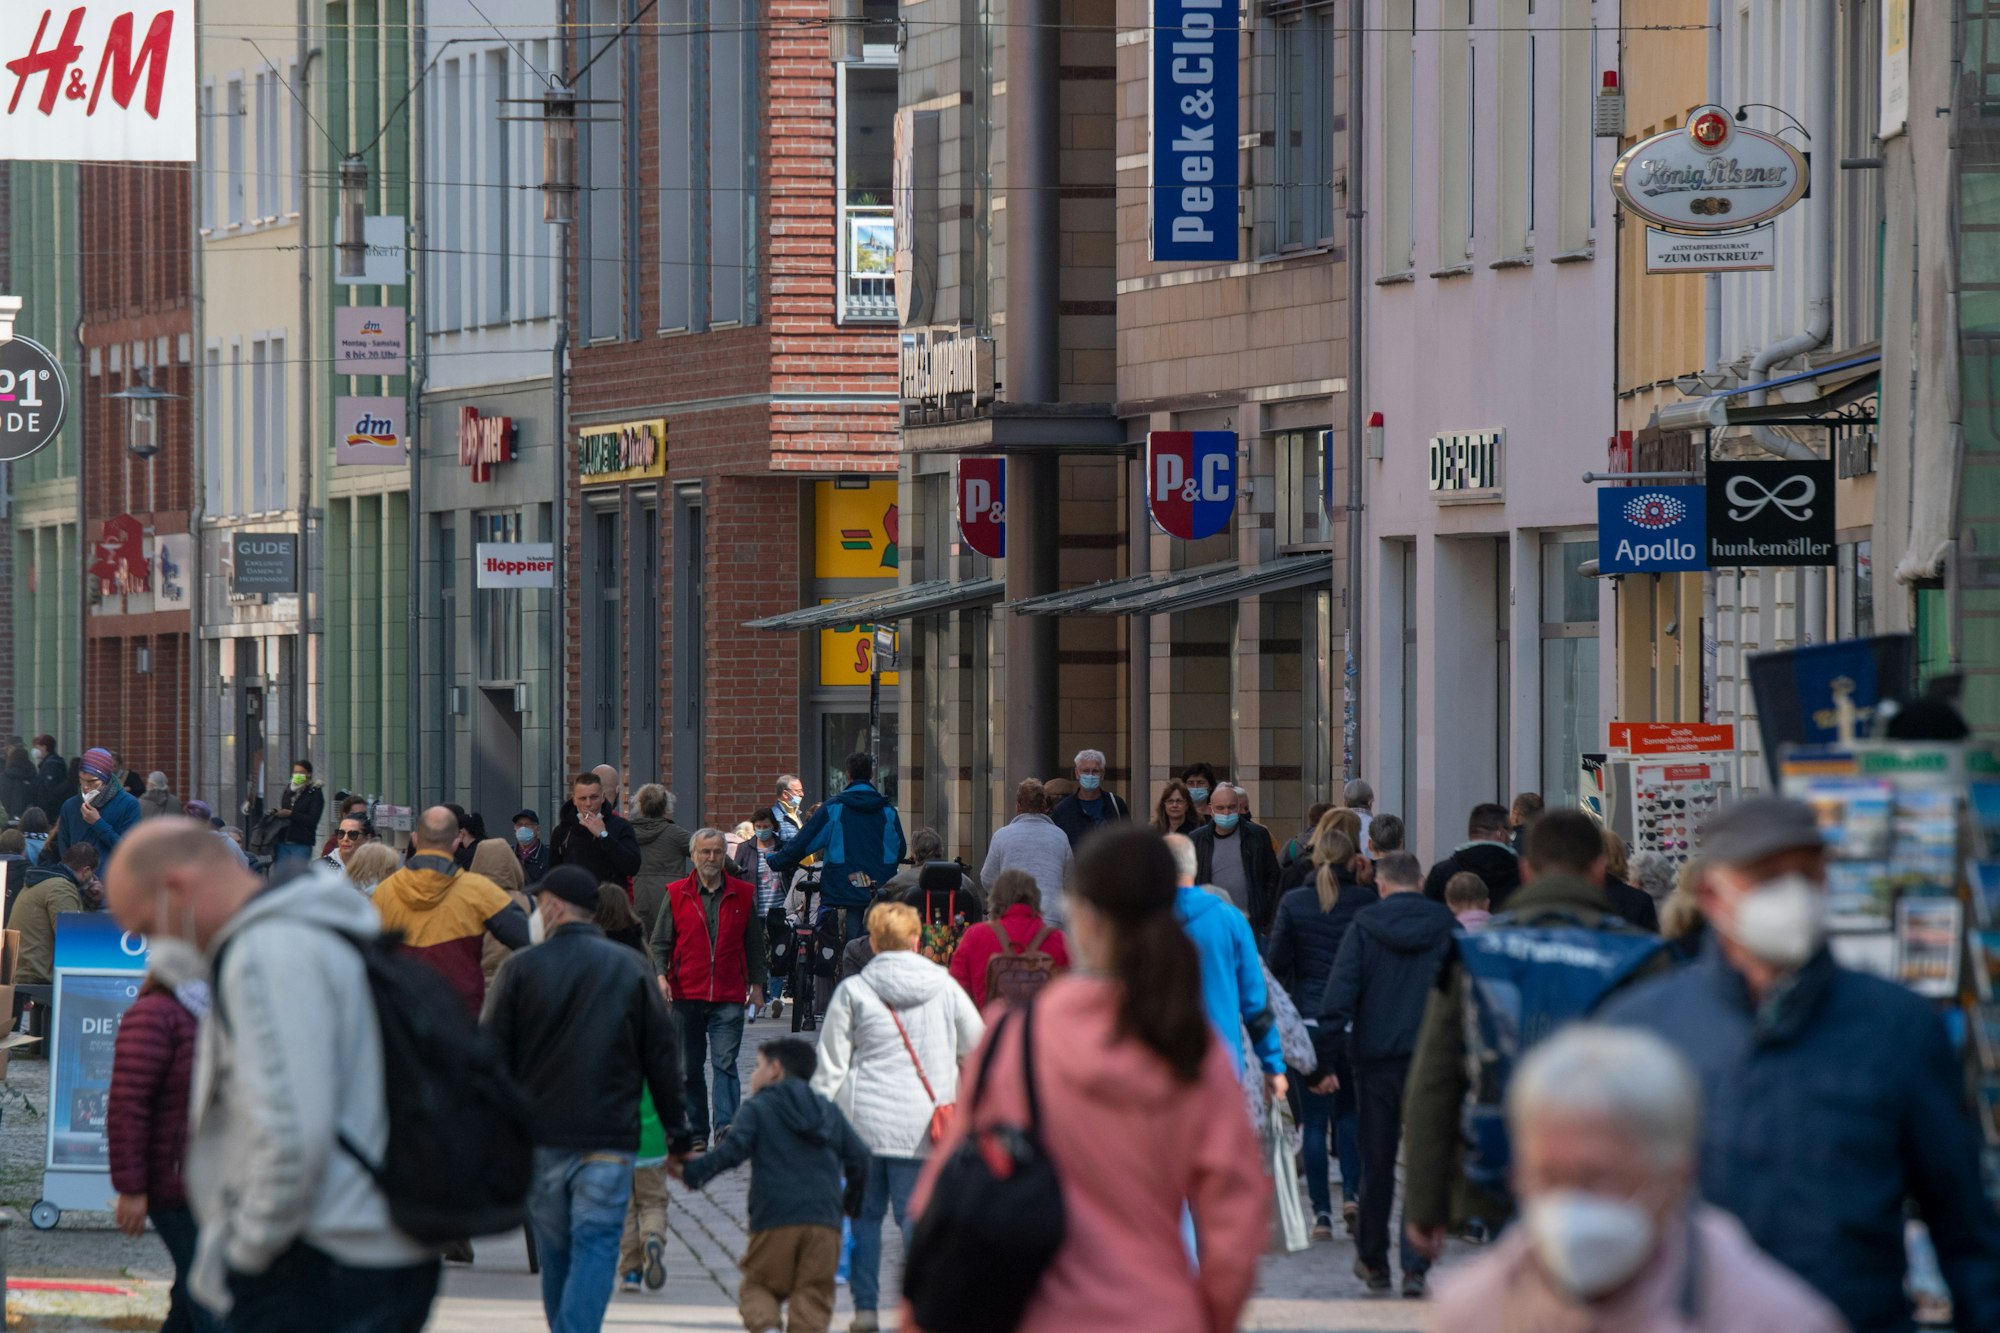 Auf der Einkaufsstraße und Fußgängerzone Ossenreyer Straße sind im Mai 2021 zahlreiche Passanten unterwegs. Die Corona-Pandemie hat das Leben vieler Deutschen nachhaltig verändert.